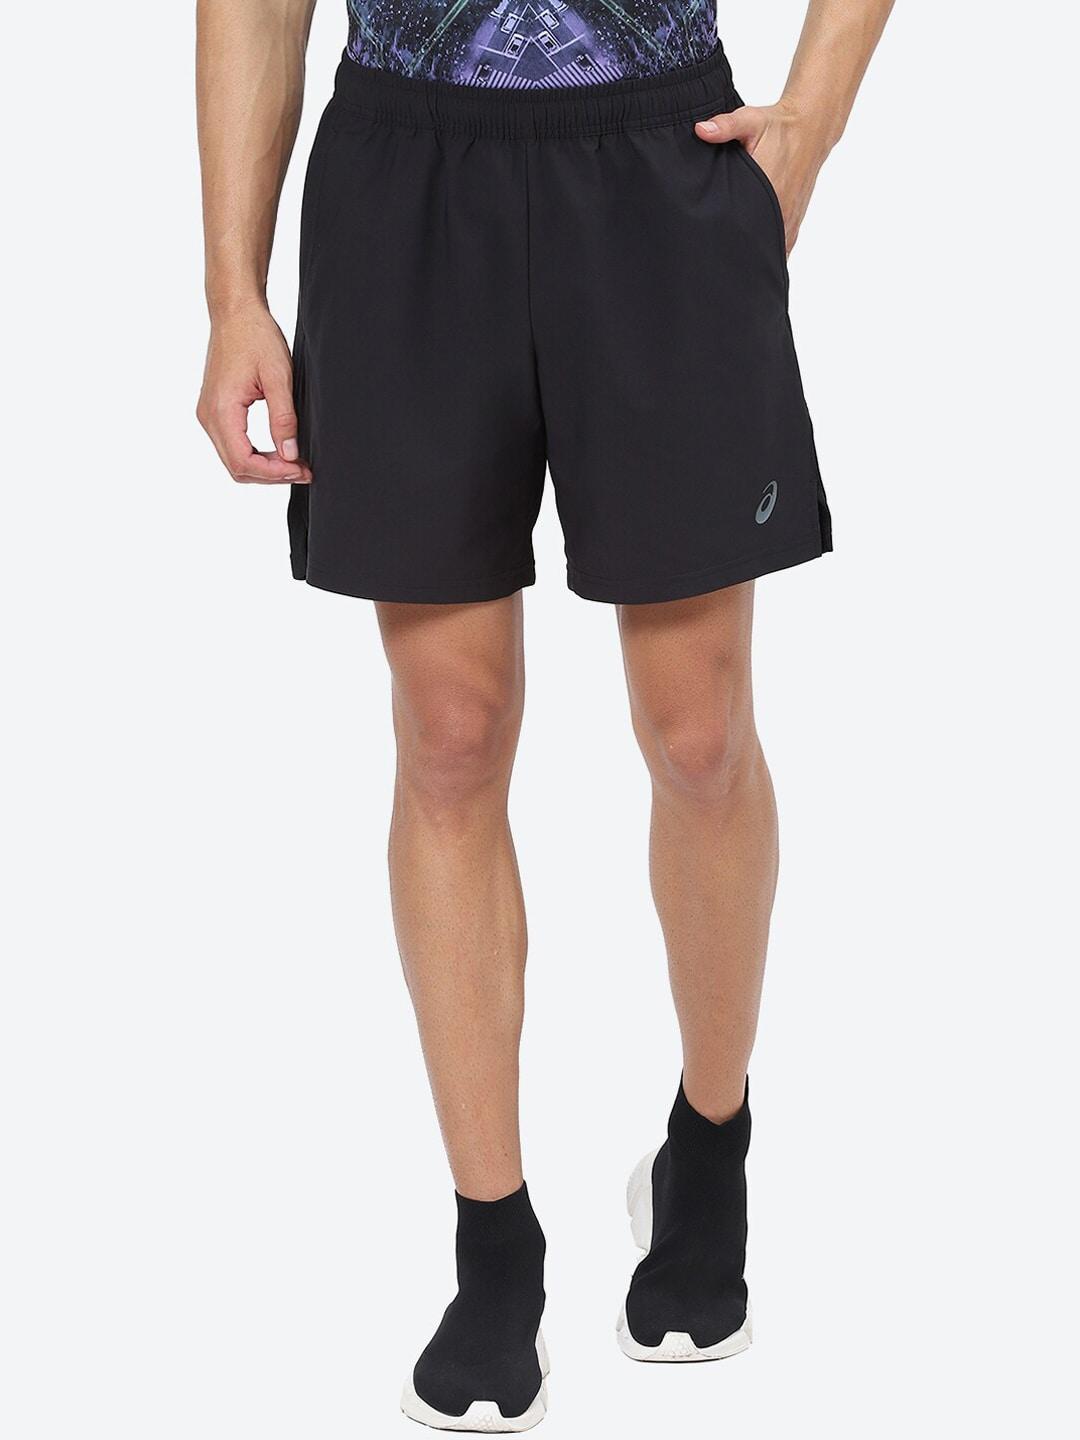 asics-men-above-knee-shorts